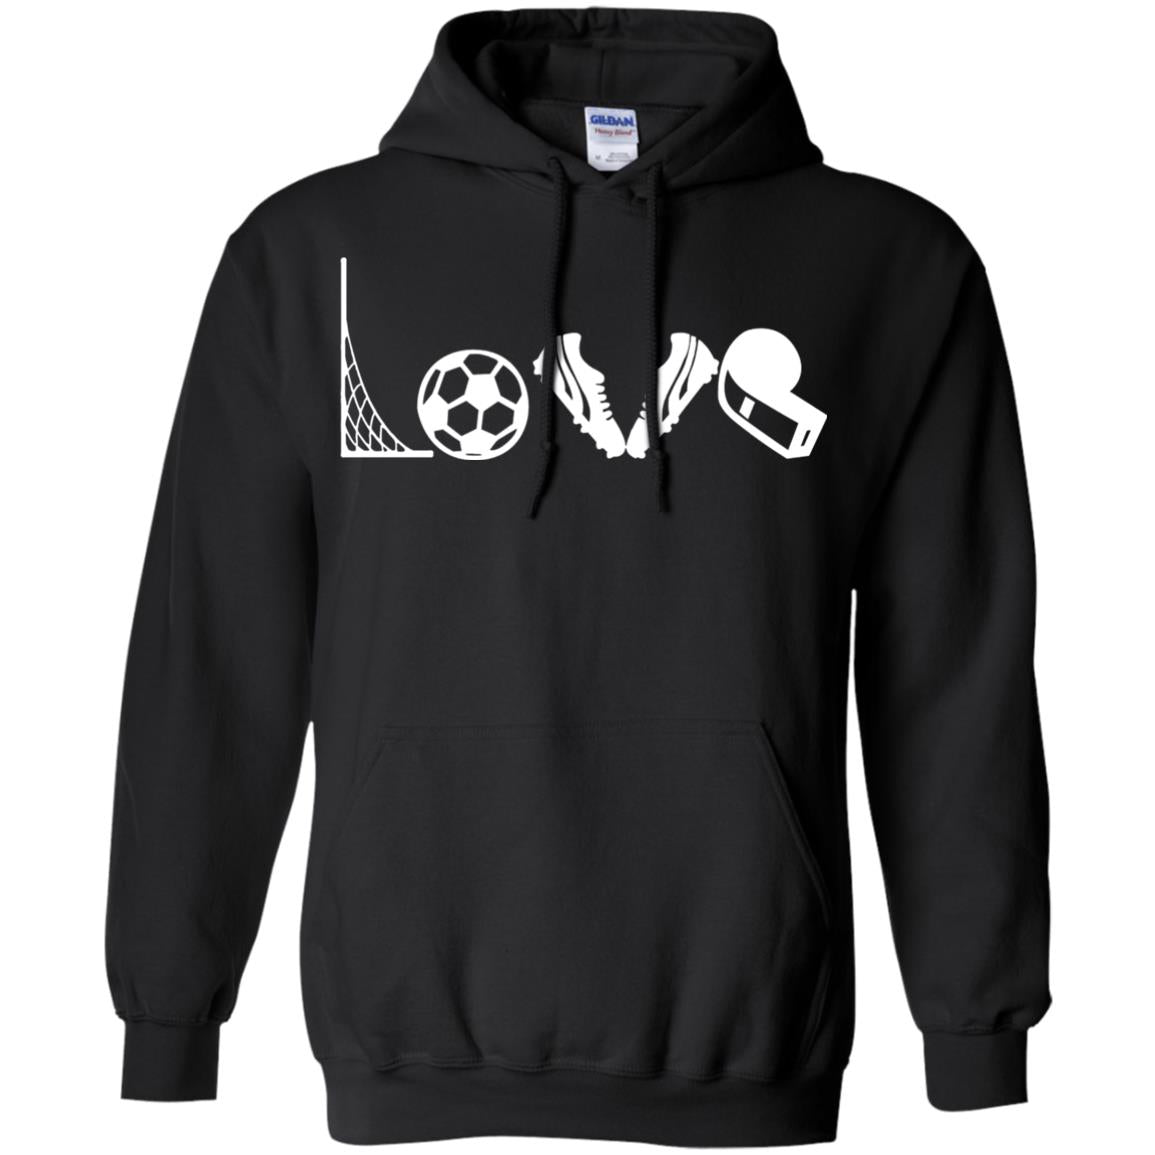 I Love Soccer Funny Soccer Lover T-shirt